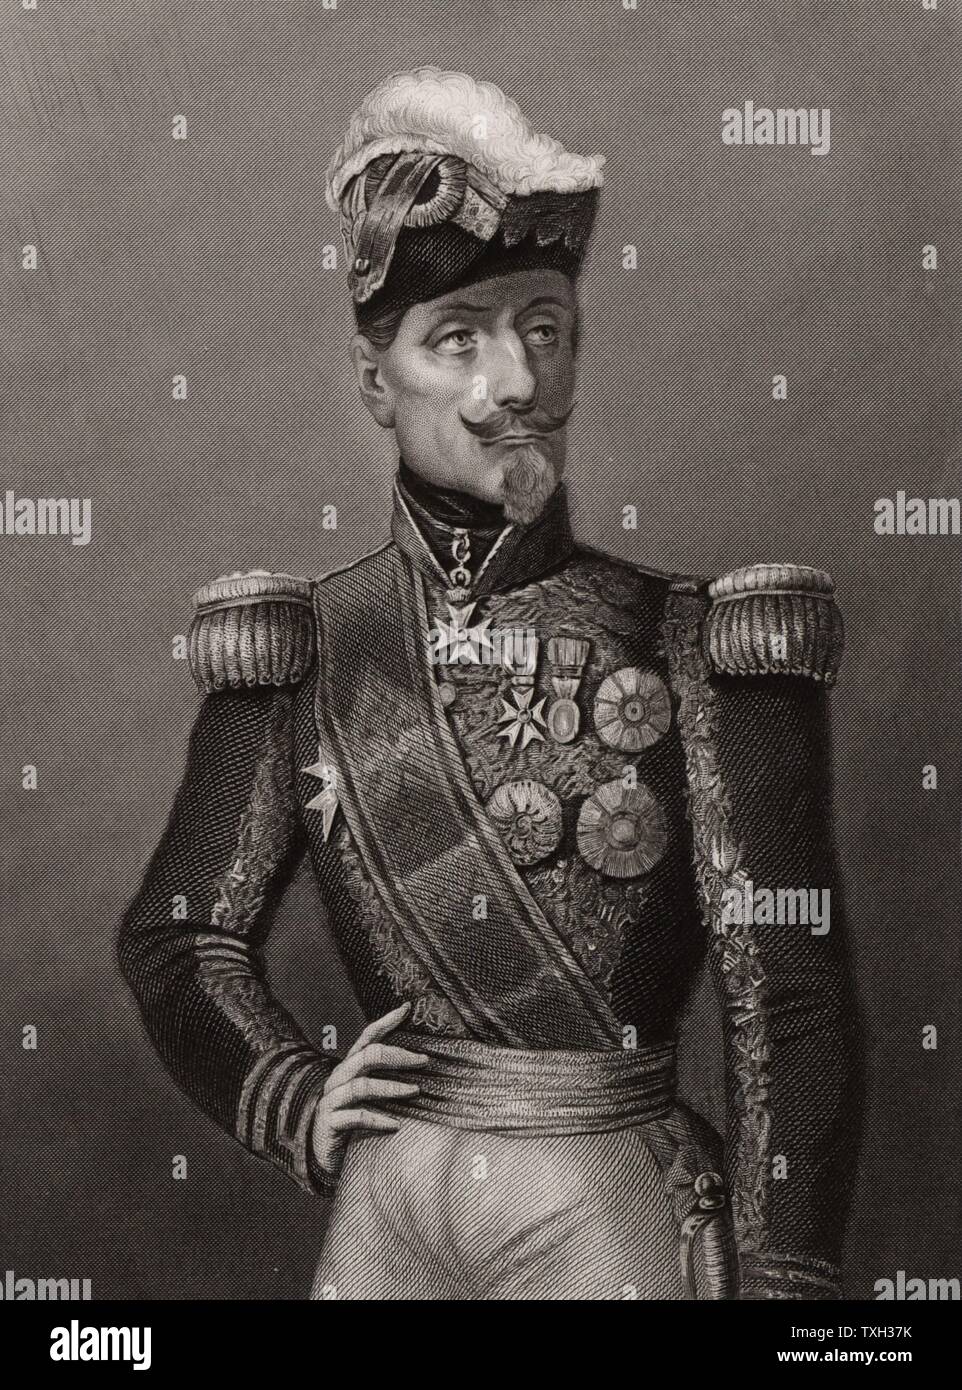 Jacques Le Roy de Saint Arnaud (1796-1854) französische Feldherr. Kriegsminister zu Napoleon III (1851-1854), Marschall von Frankreich; die französischen Streitkräfte während des Krimkrieges (Russisch-türkischen) Krieg geboten. Er starb auf dem Weg nach Hause nach der Schlacht von Alma. Gravur c 1856. Stockfoto